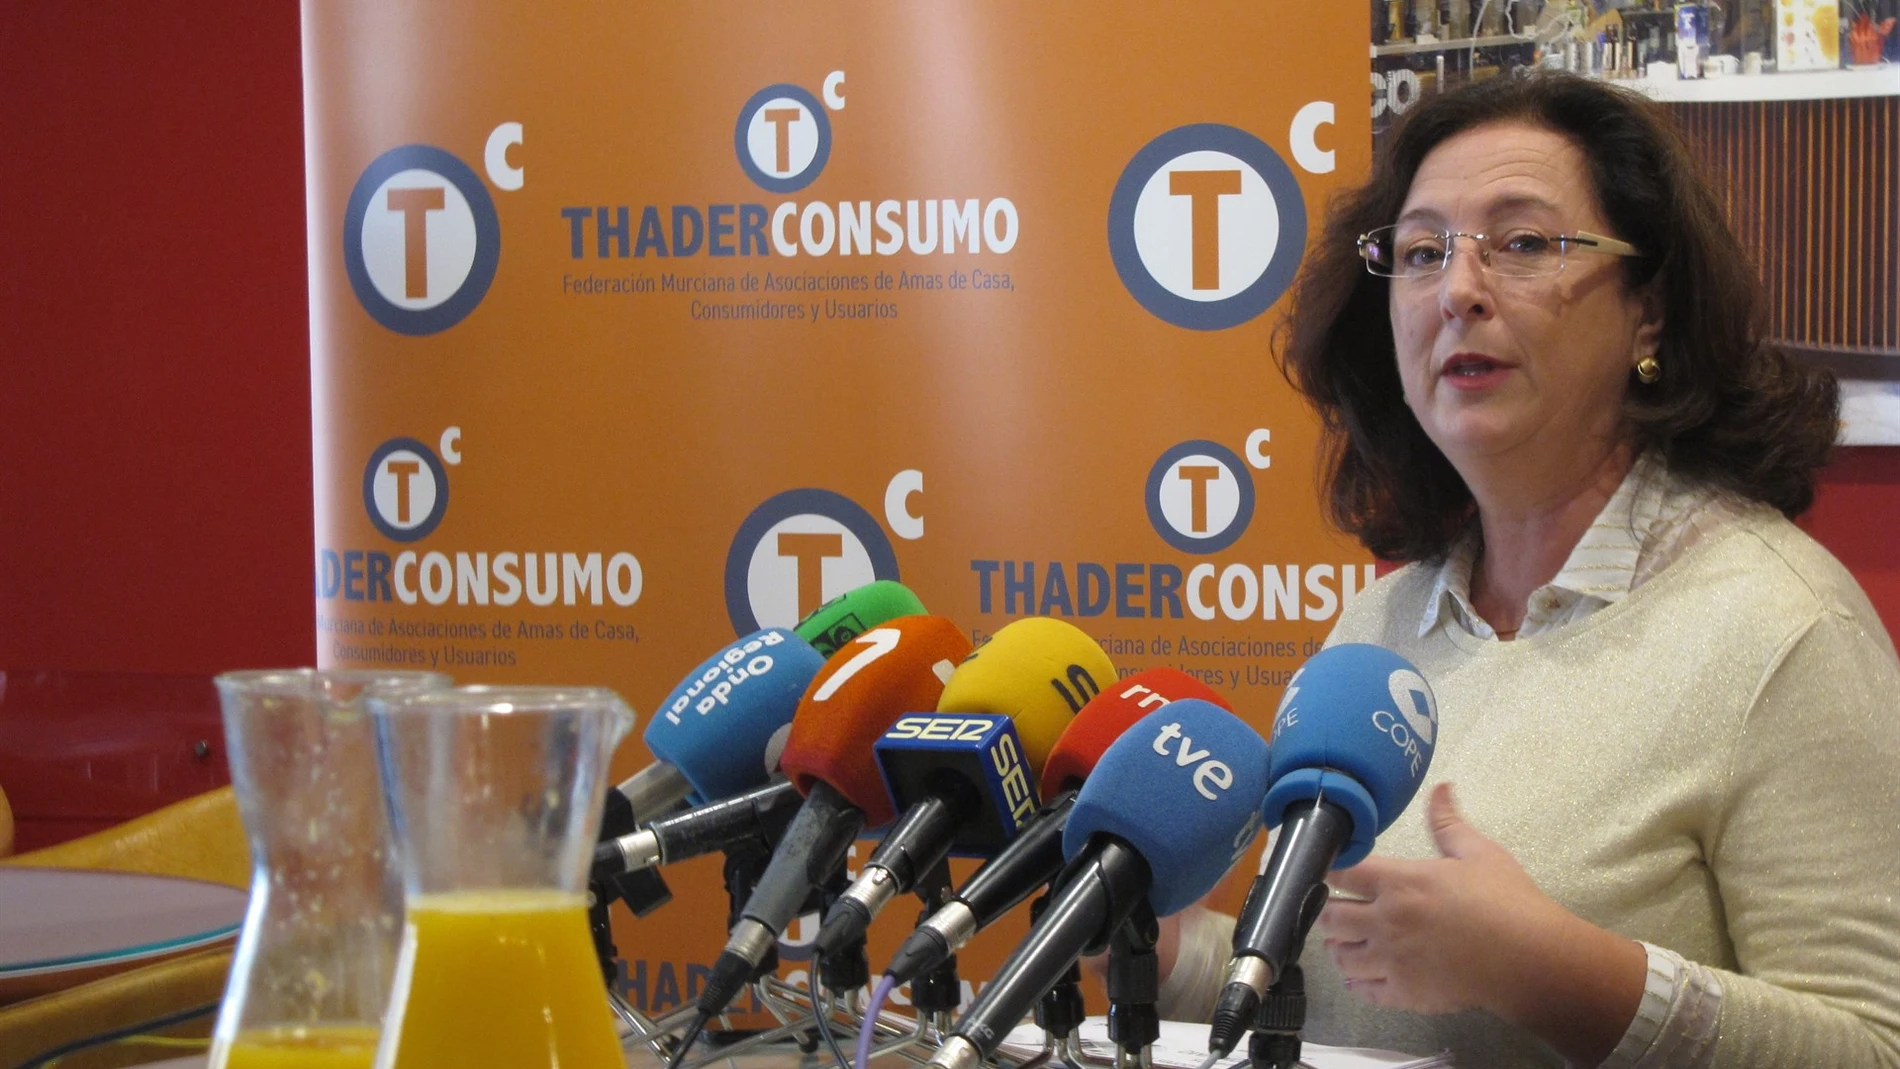 La presidenta de la Federación Murciana de Asociaciones de Amas de Casa, Consumidores y Usuarios ThaderConsumo, Juana Pérez, ayer en rueda de prensa